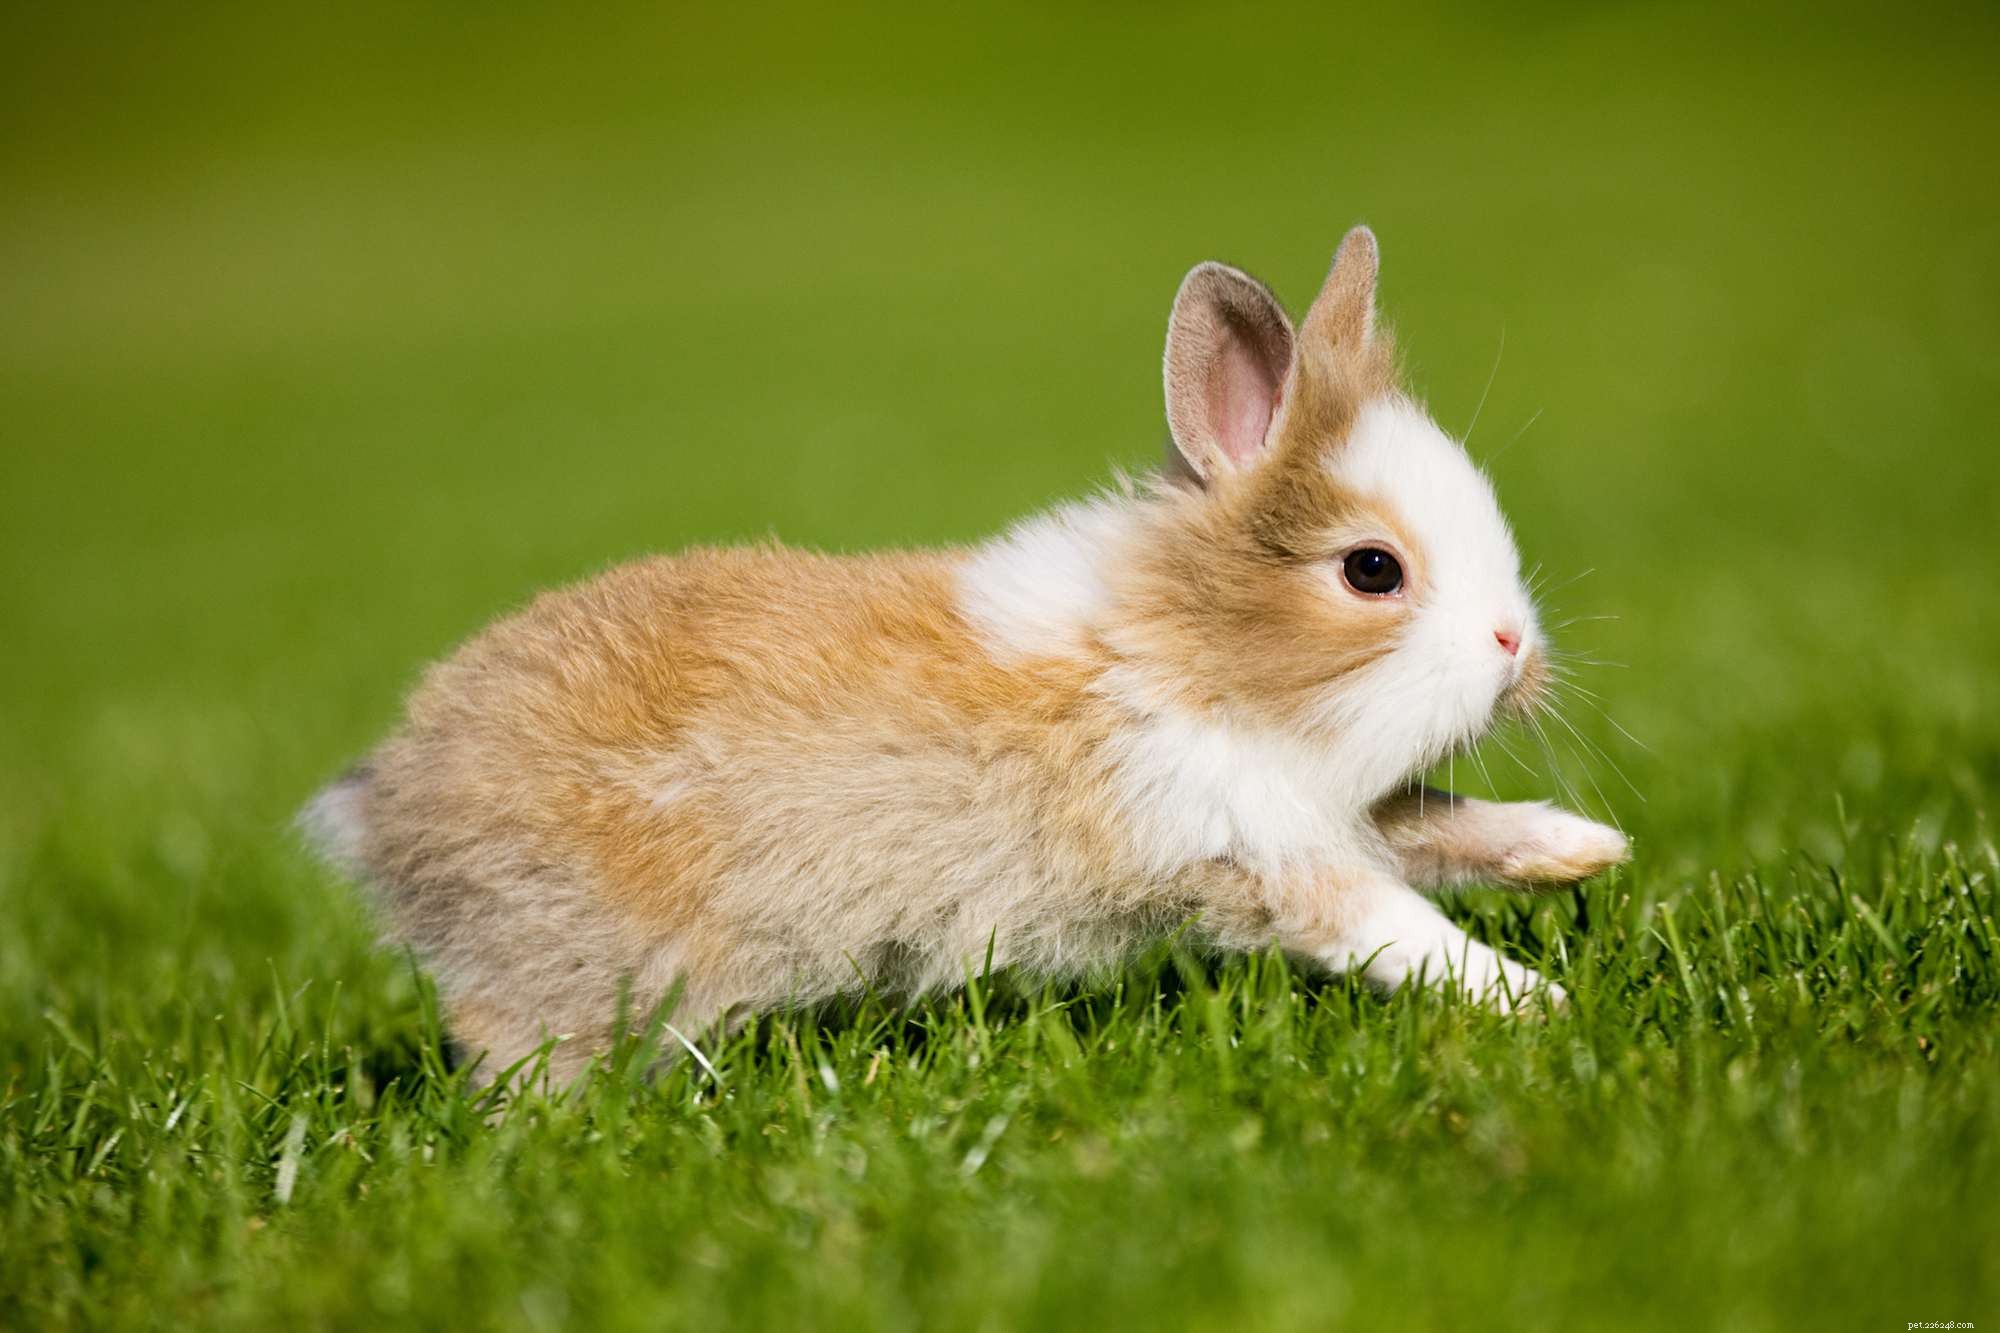 Comprendre le comportement et le langage corporel du lapin